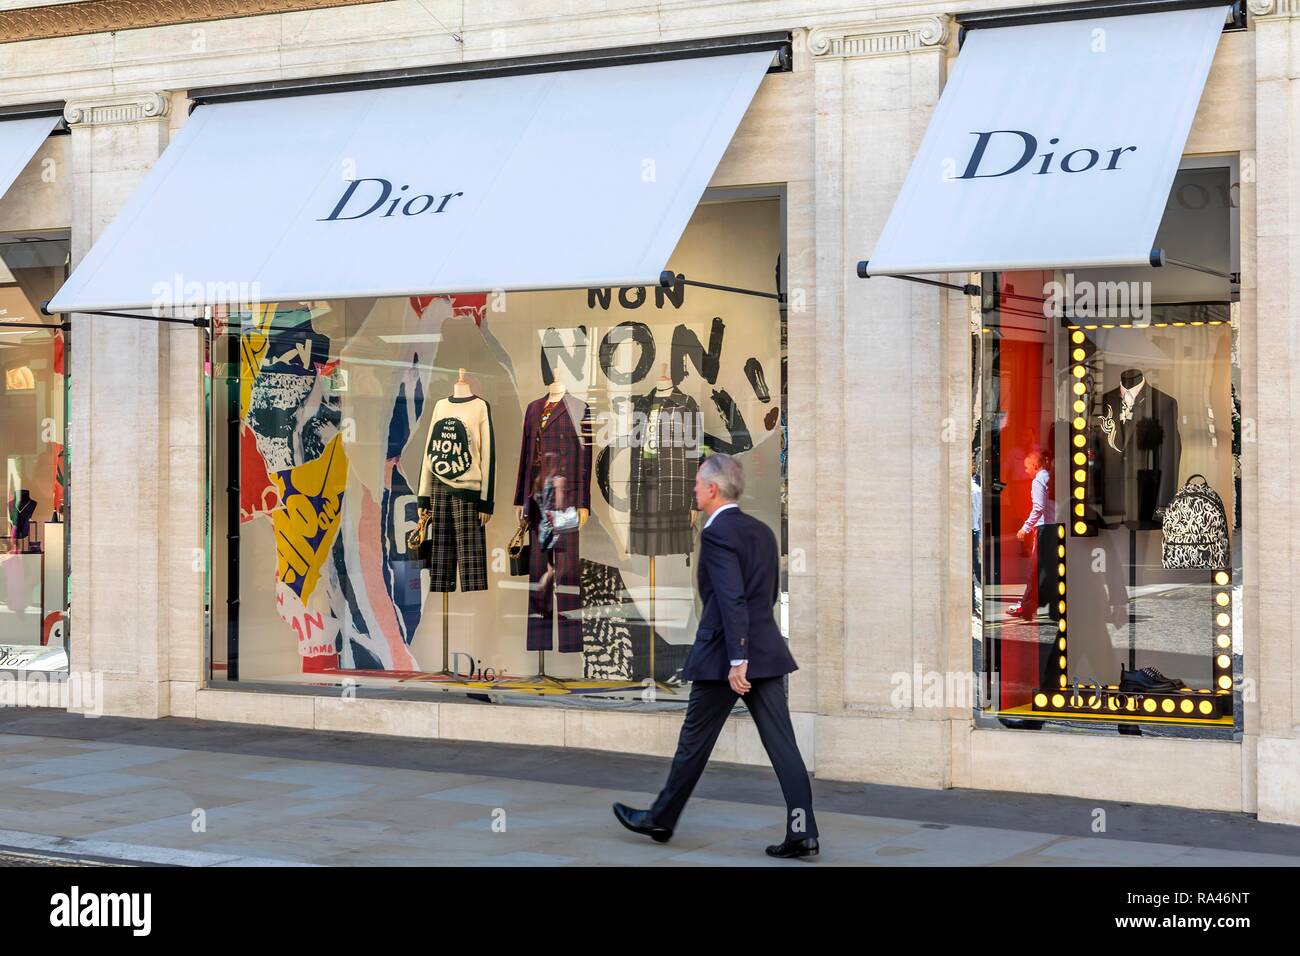 Passante nella parte anteriore del negozio finestra, fashion shop Dior, London, Regno Unito Foto Stock